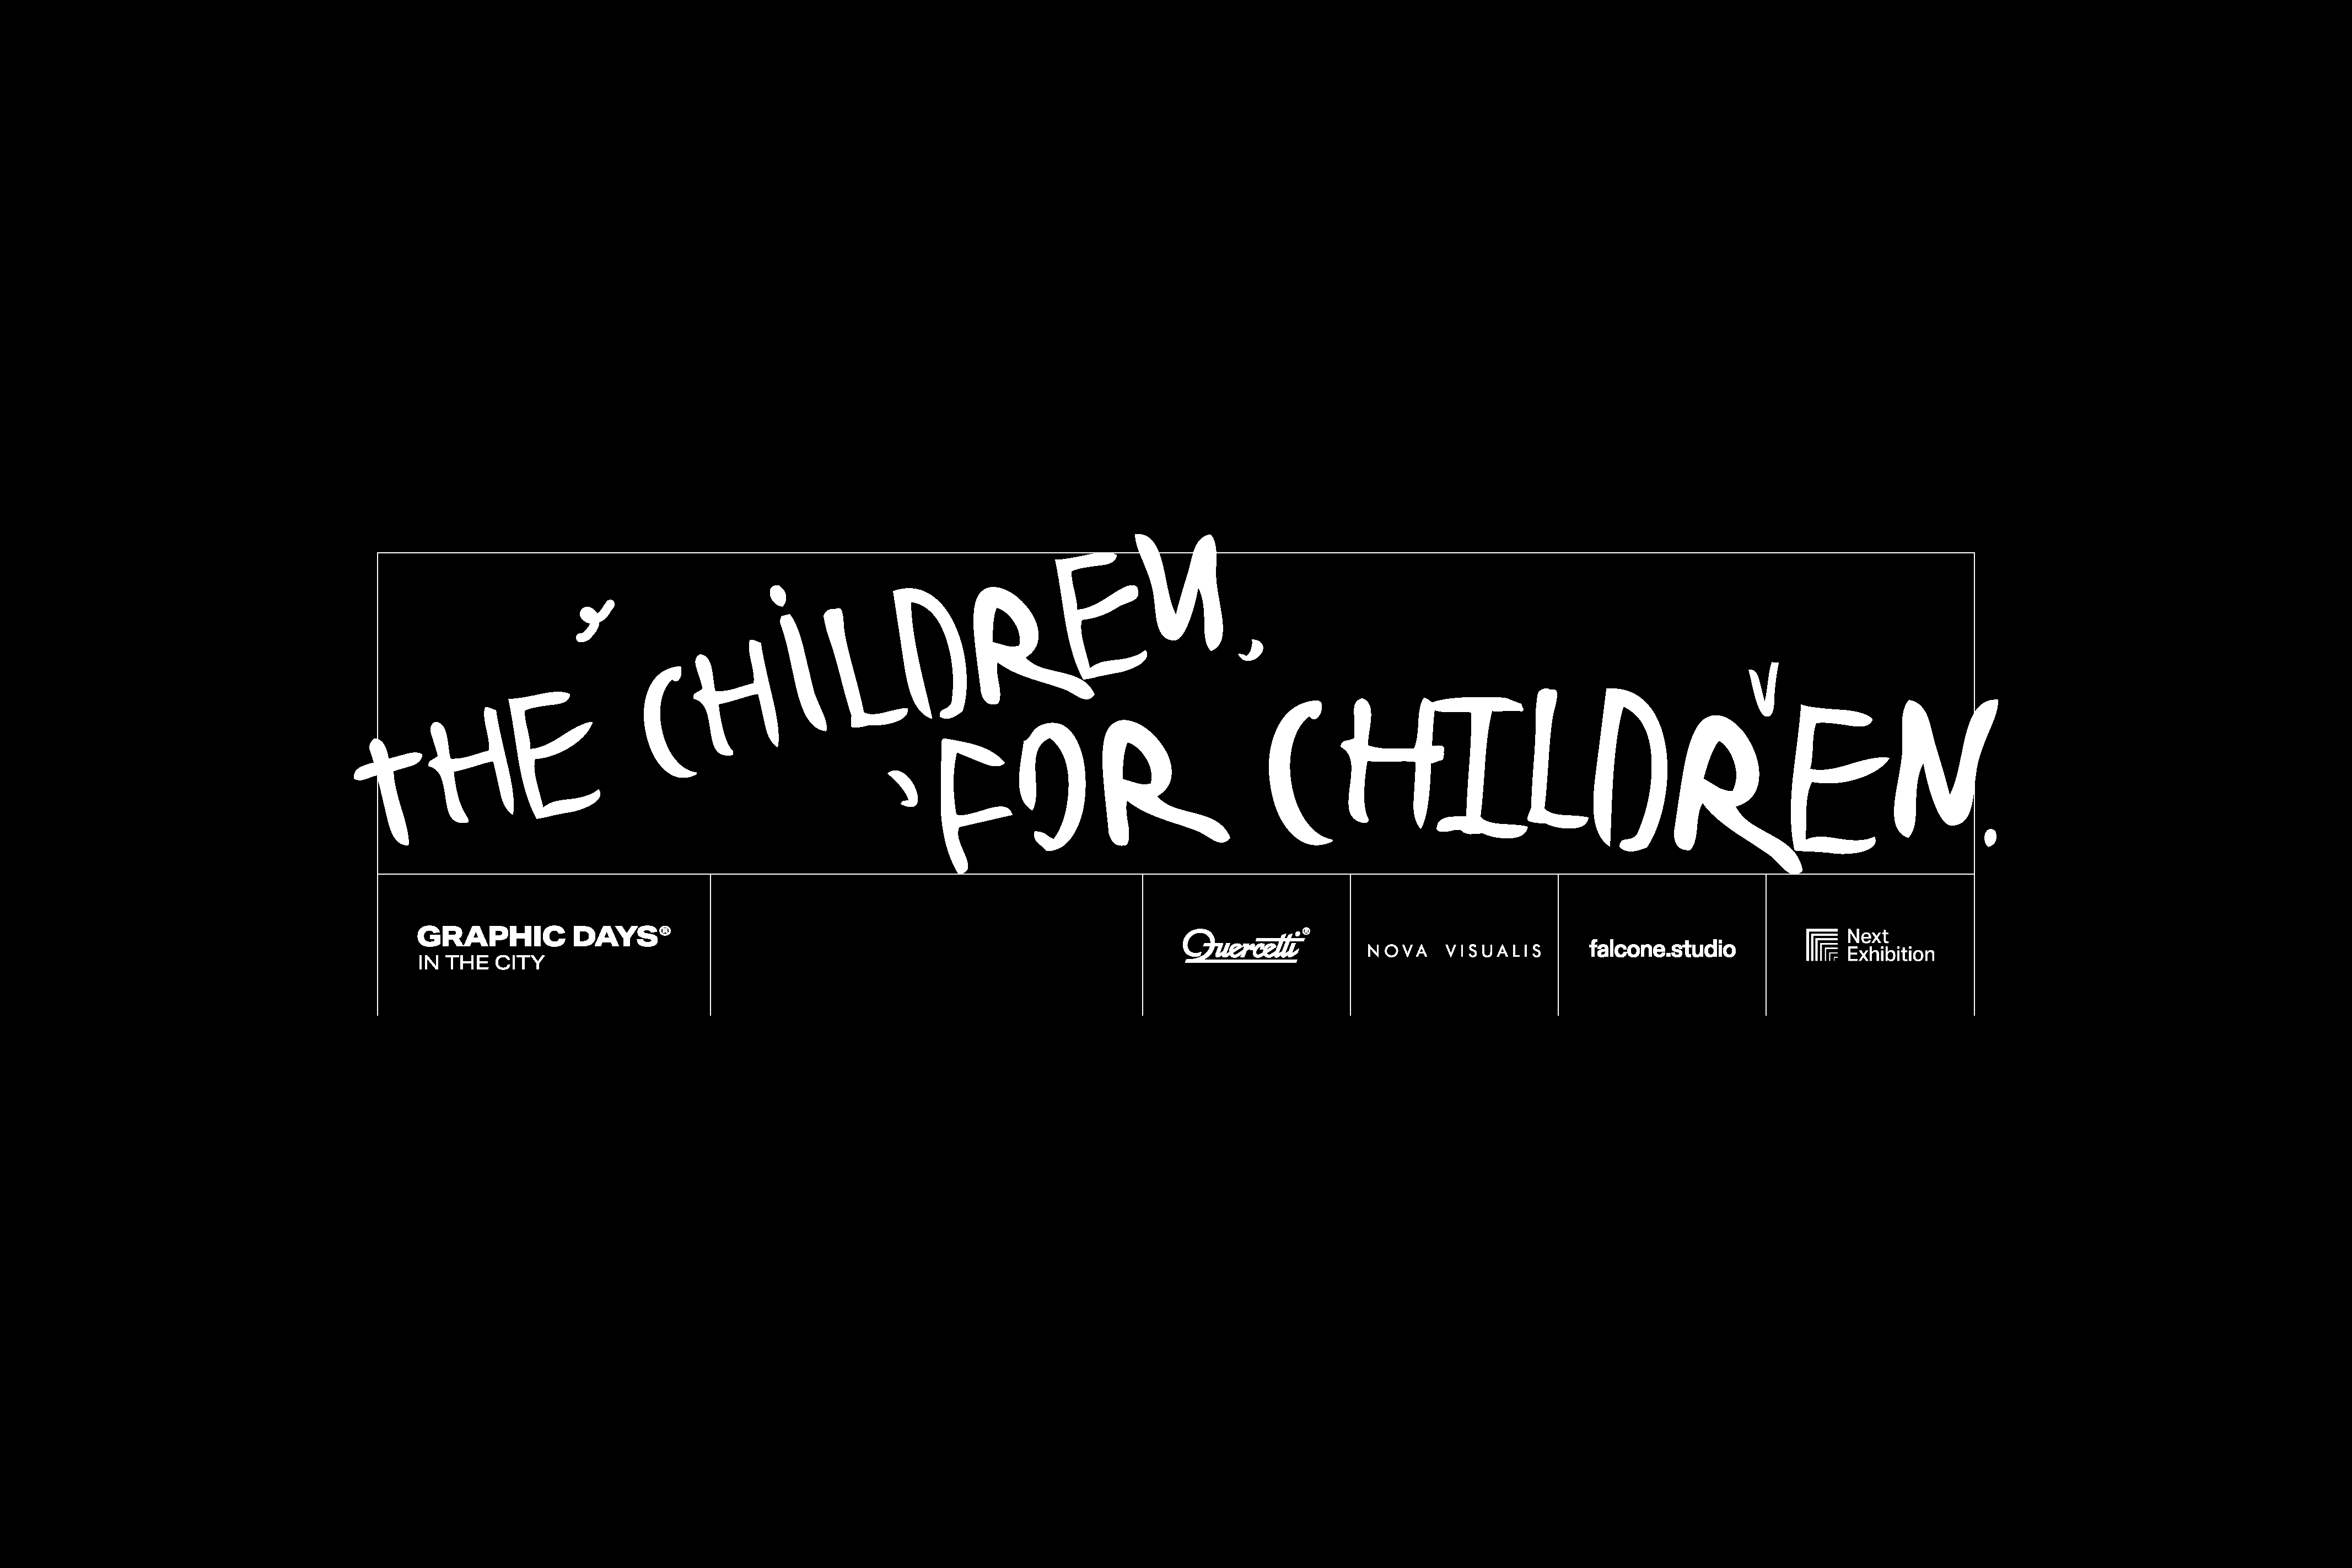 THE CHILDREN, FOR CHILDREN. - Graphic Days 2022